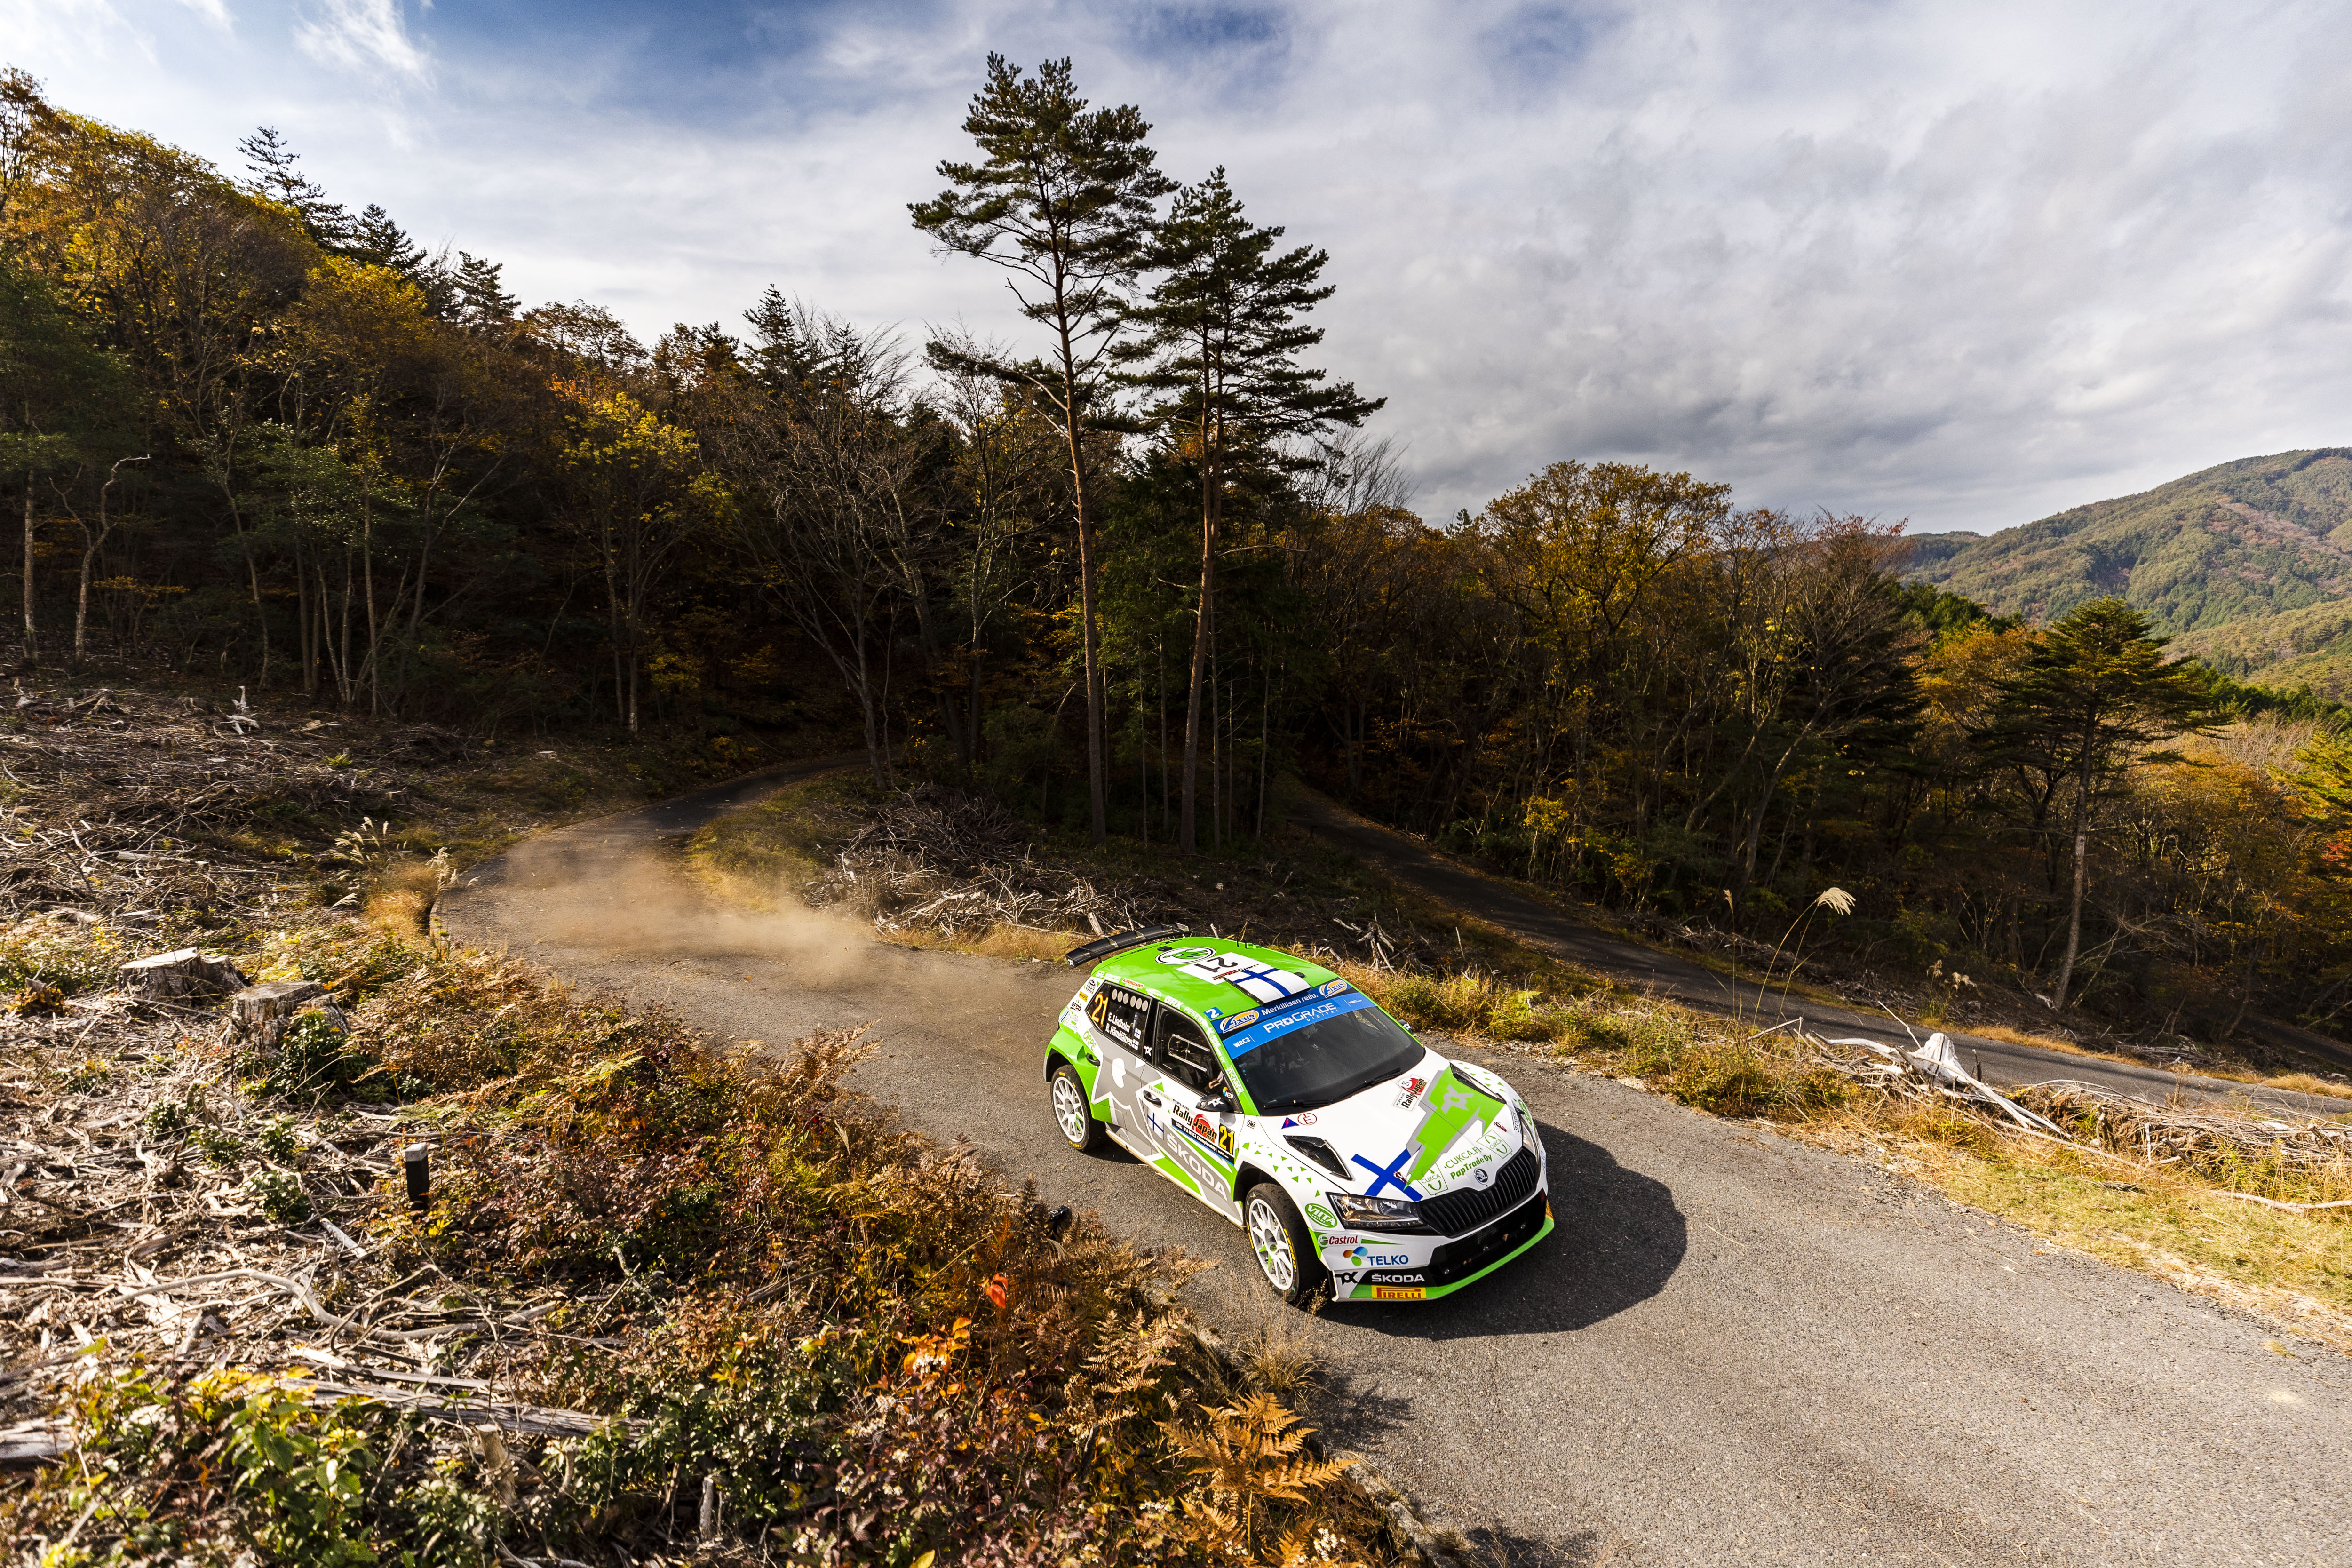 WRC – Lindholmは、Munsterが日本で素晴らしい勝利を収め、WRC2の王冠を獲得しました。